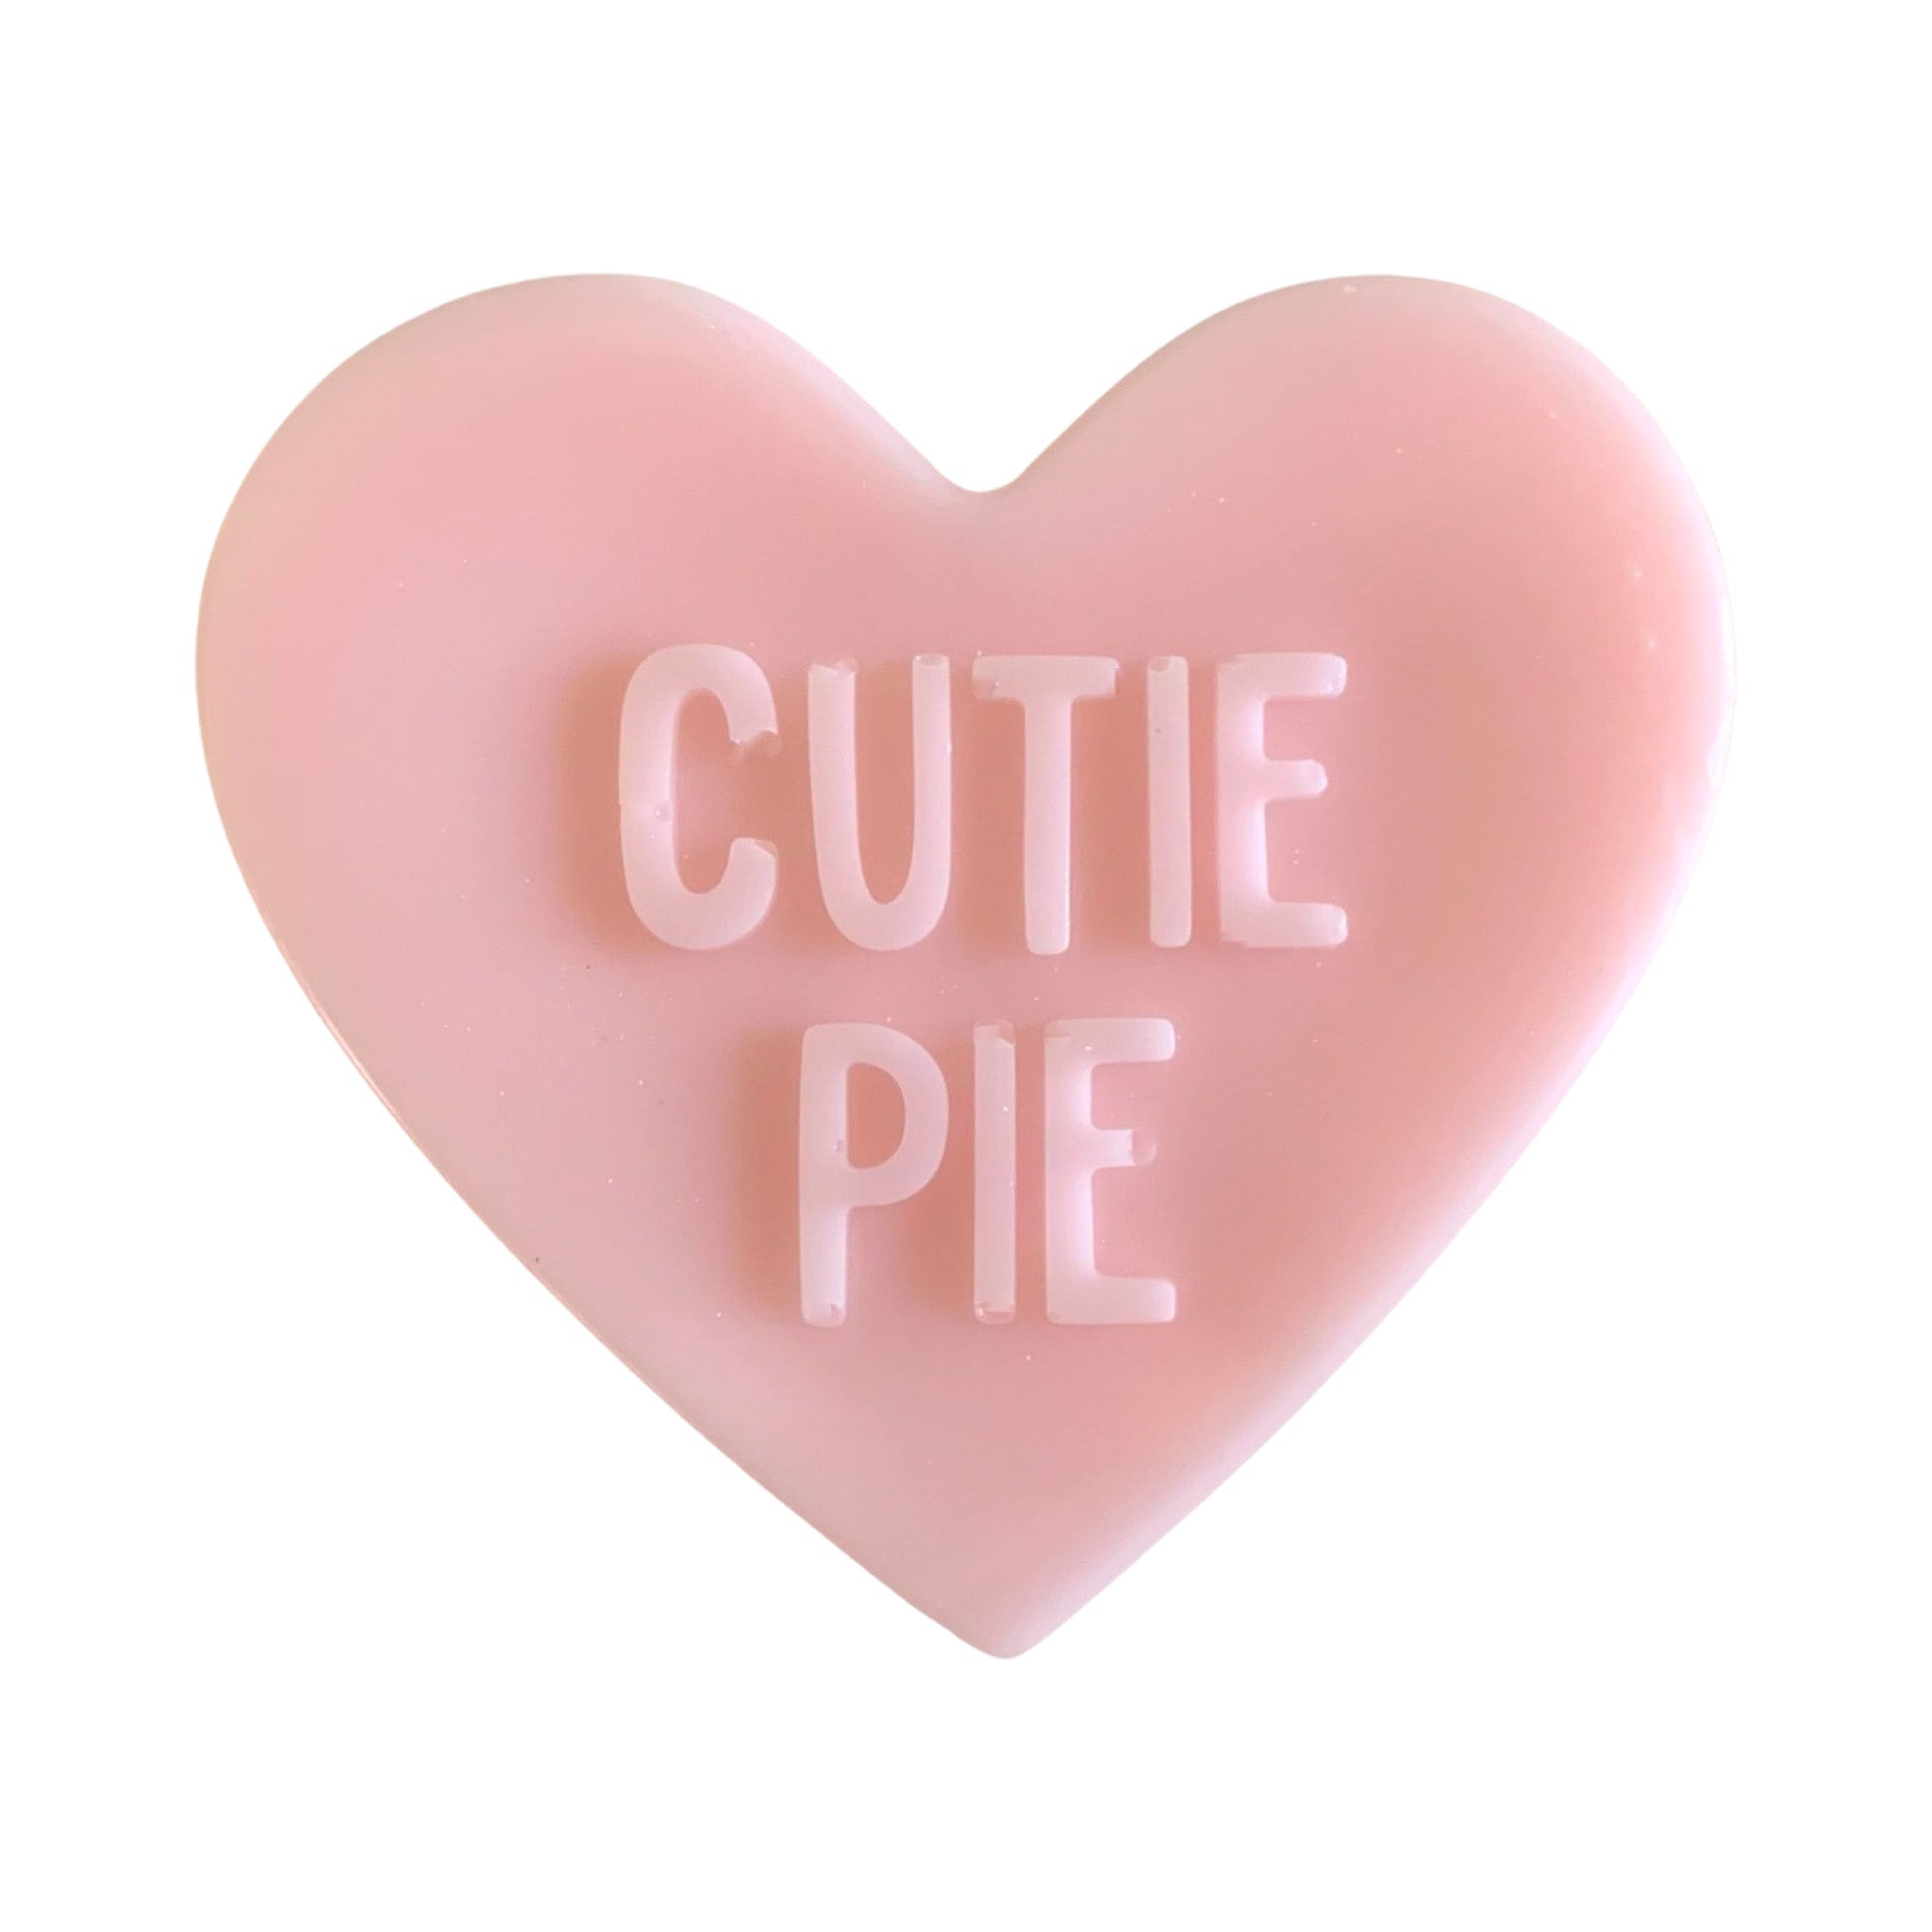 3D Large Valentine Heart "Cutie Pie"  Soap